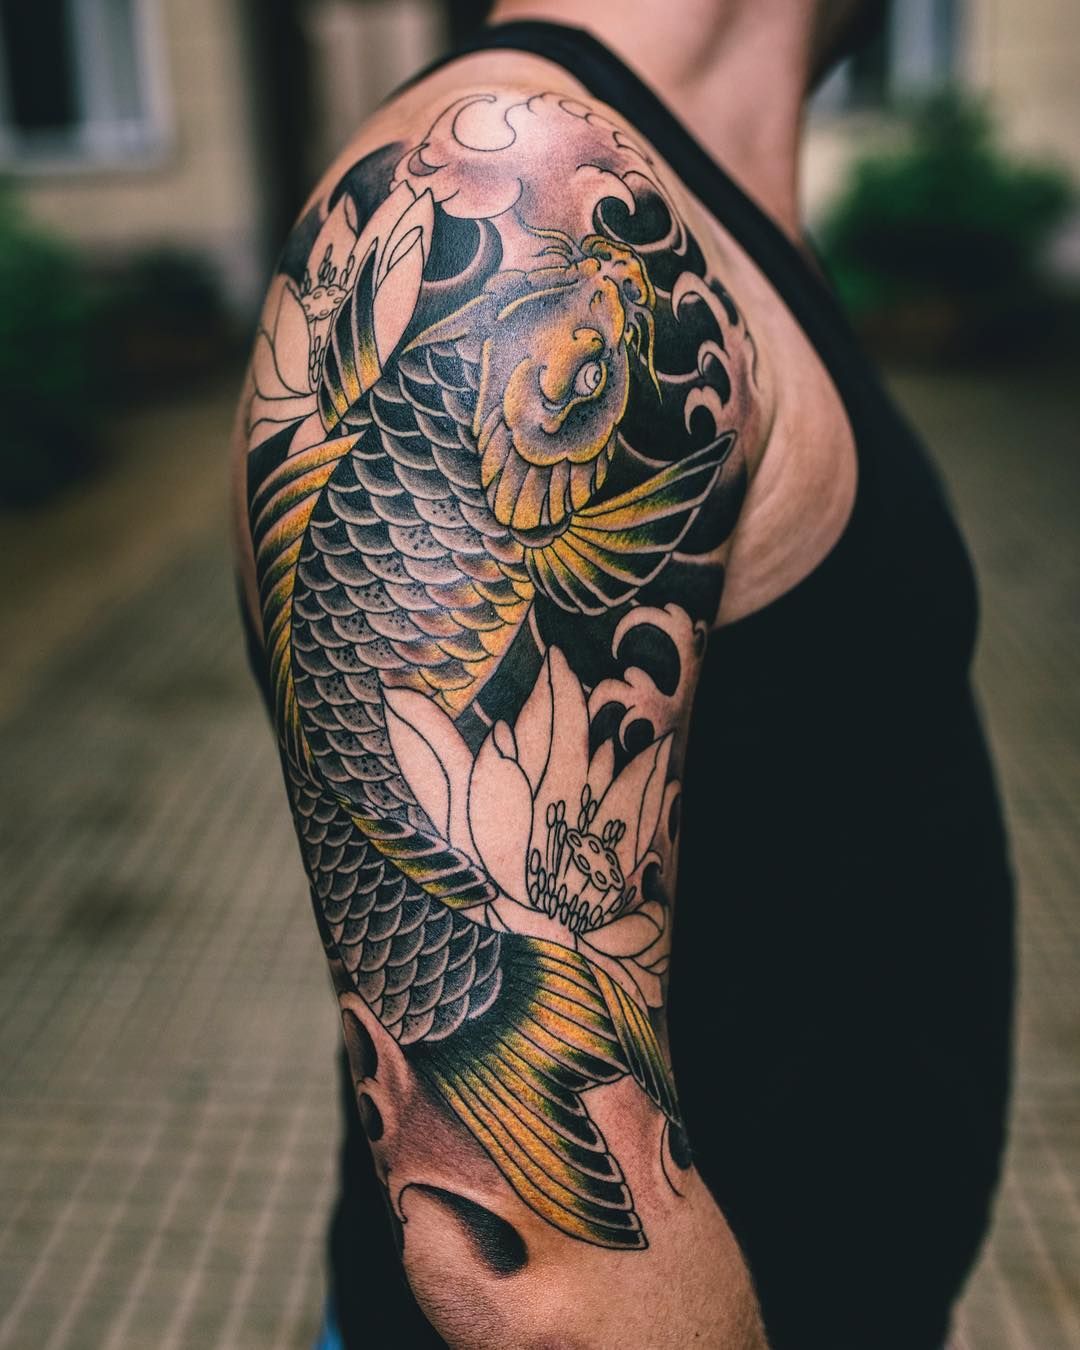 diseño bonito de tatuaje japones con fuerte significado, tatuajes con simbologia, diseño de tattoo en el brazo con pez Koi 